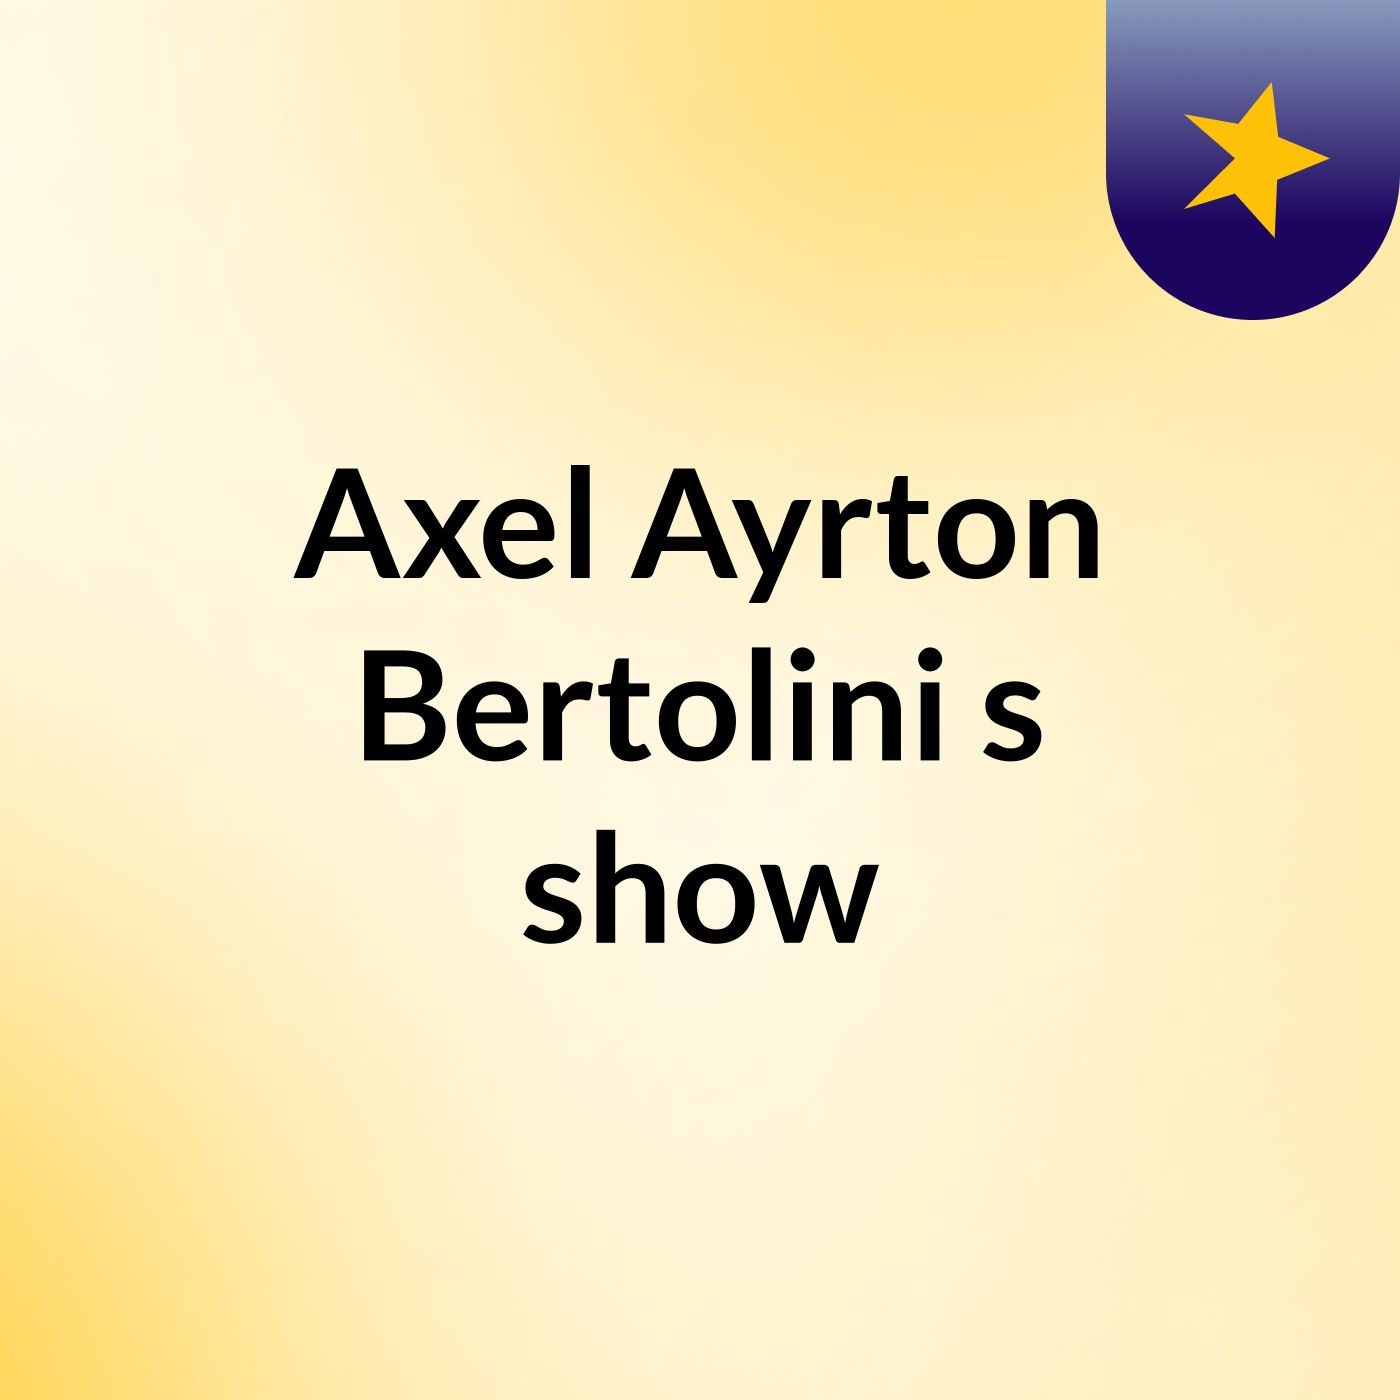 Axel Ayrton Bertolini's show